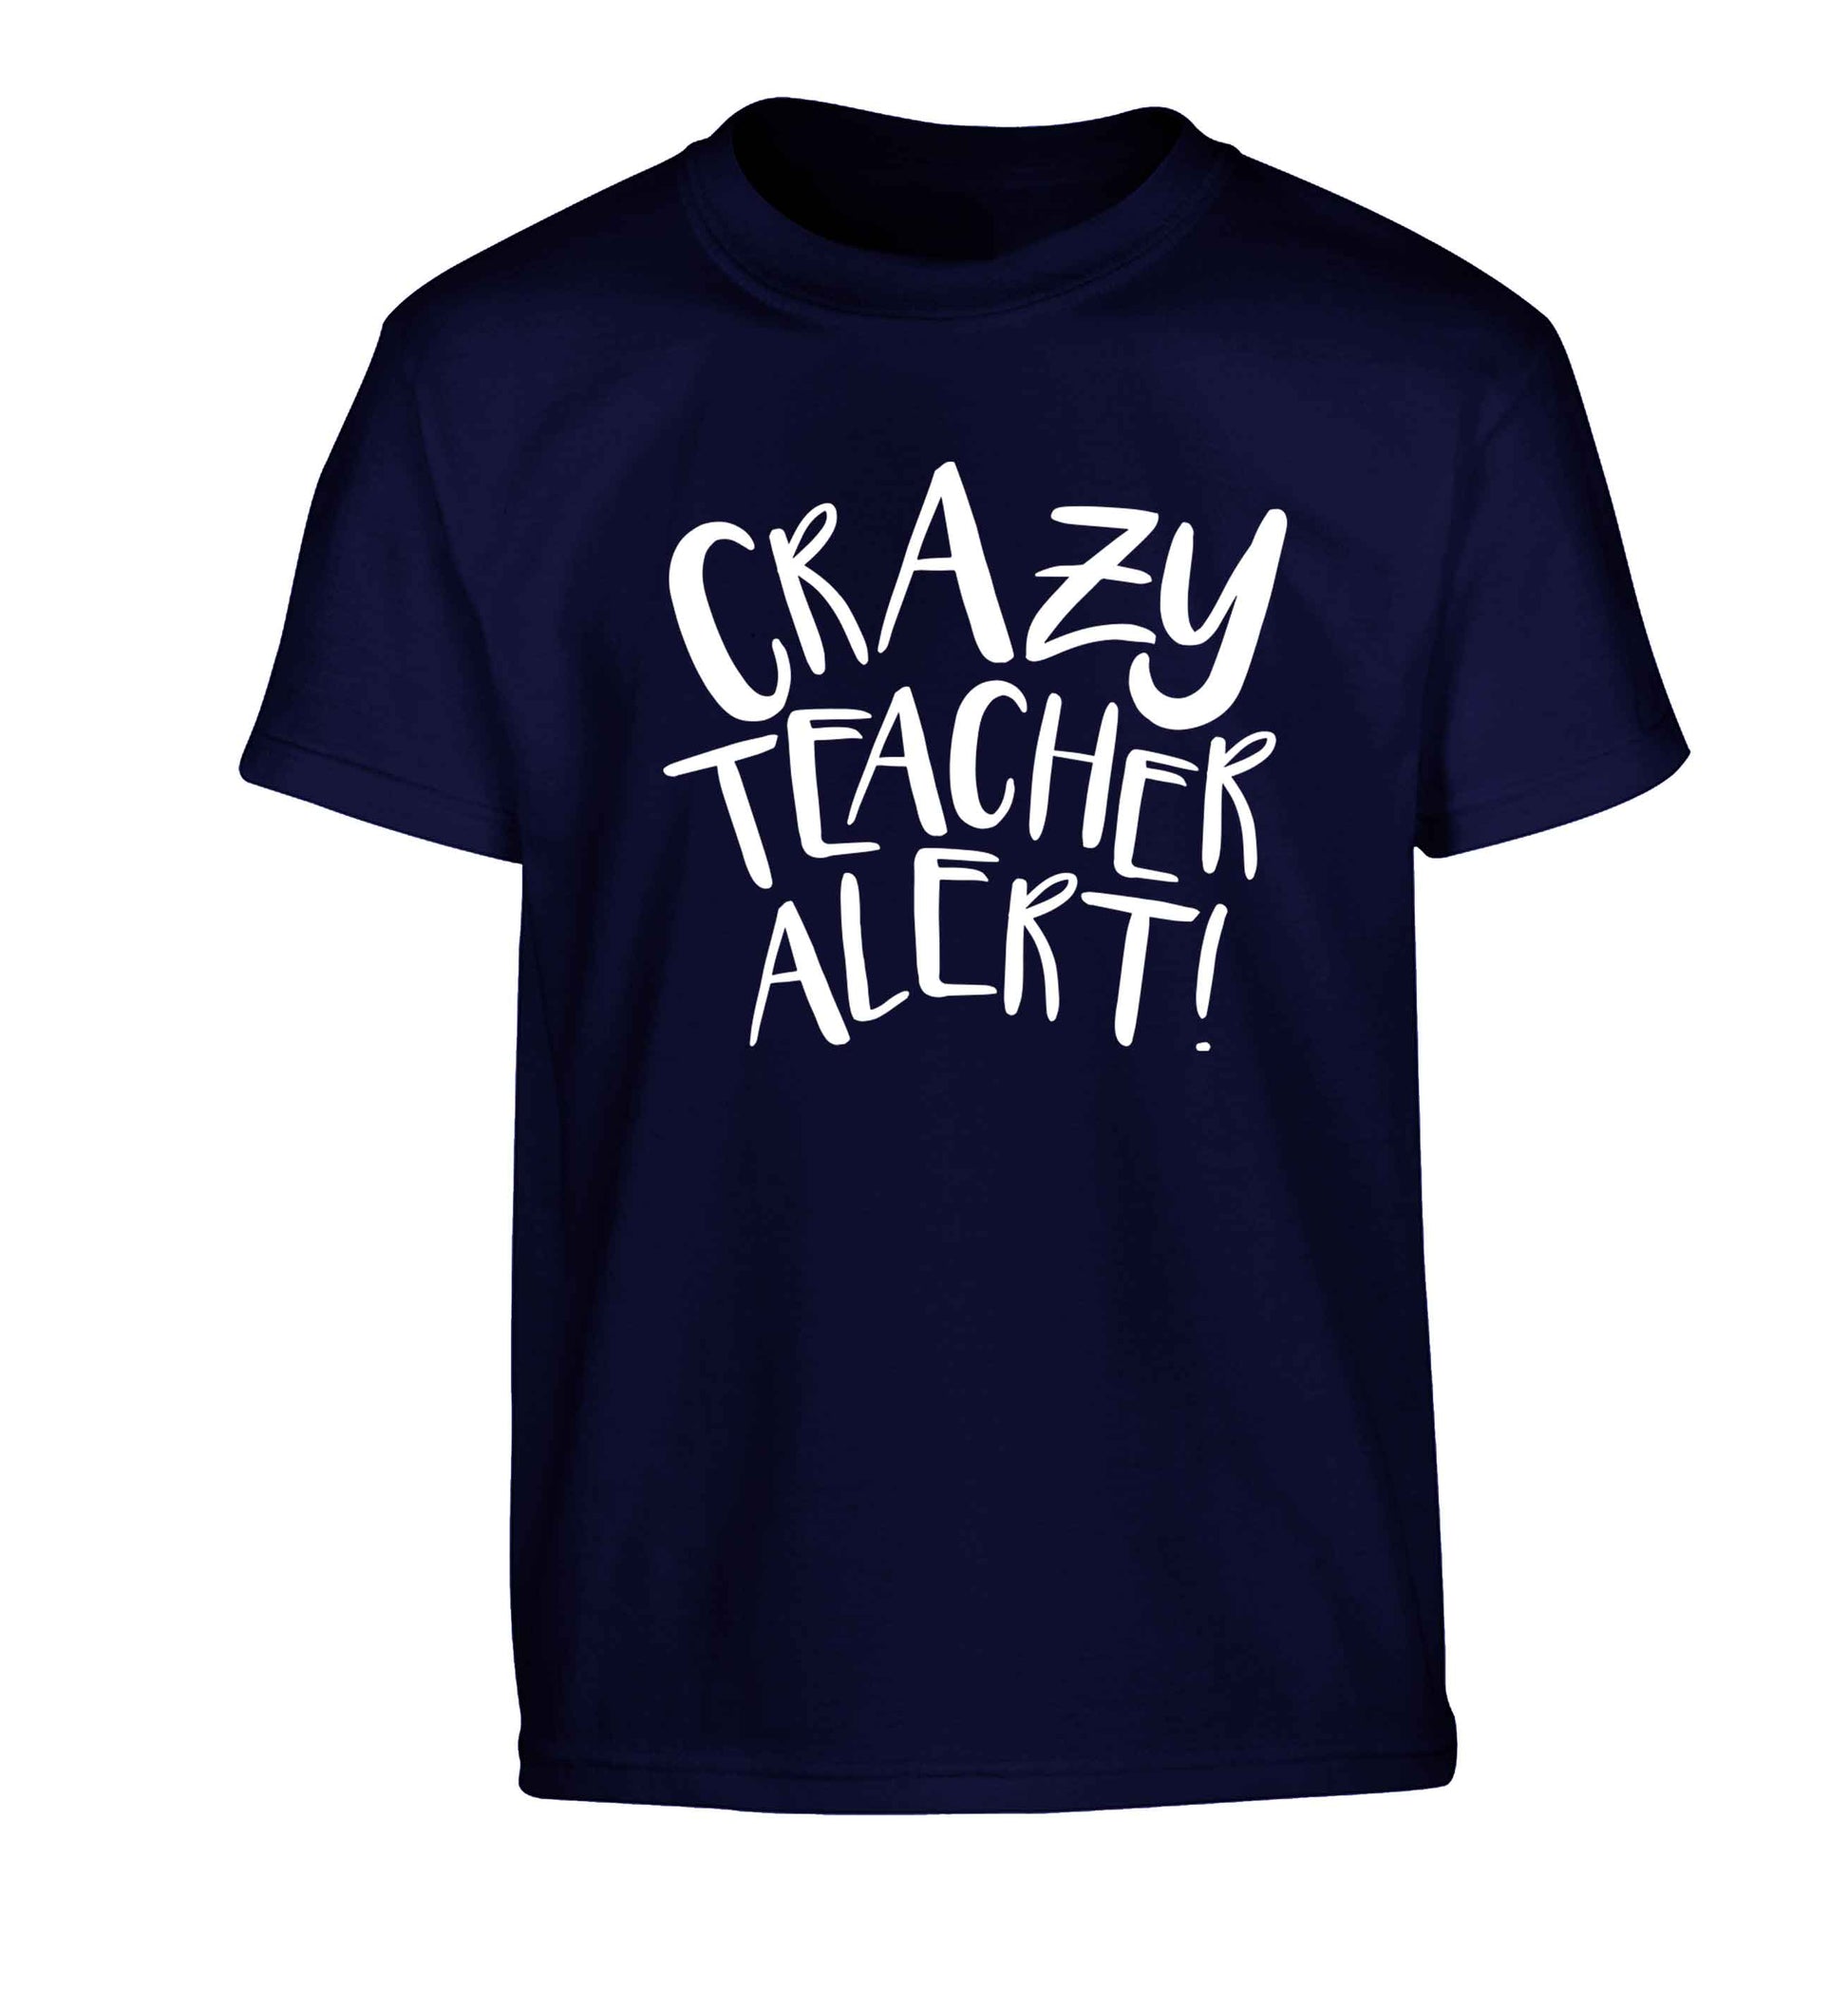 Crazy teacher alert Children's navy Tshirt 12-13 Years